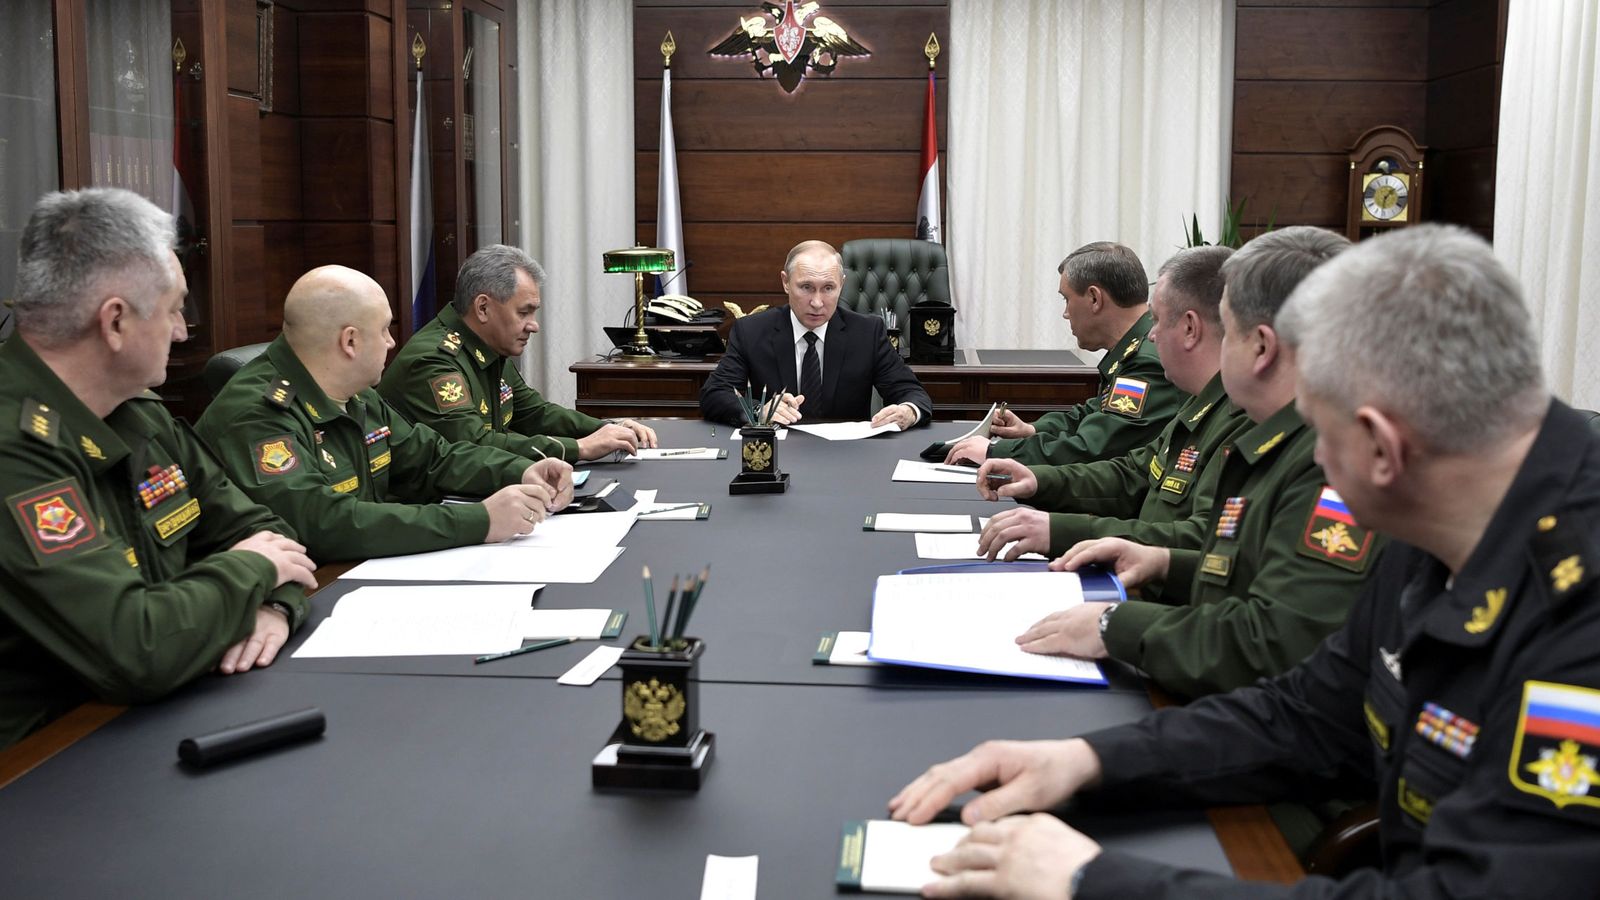 Foto: Vladímir Putin, el ministro de Defensa, Serguei Shoigu, y el jefe del estado mayor, Valery Gerasimov, se reúnen con altos oficiales militares en Moscú, el 22 de diciembre de 2016. (Reuters)